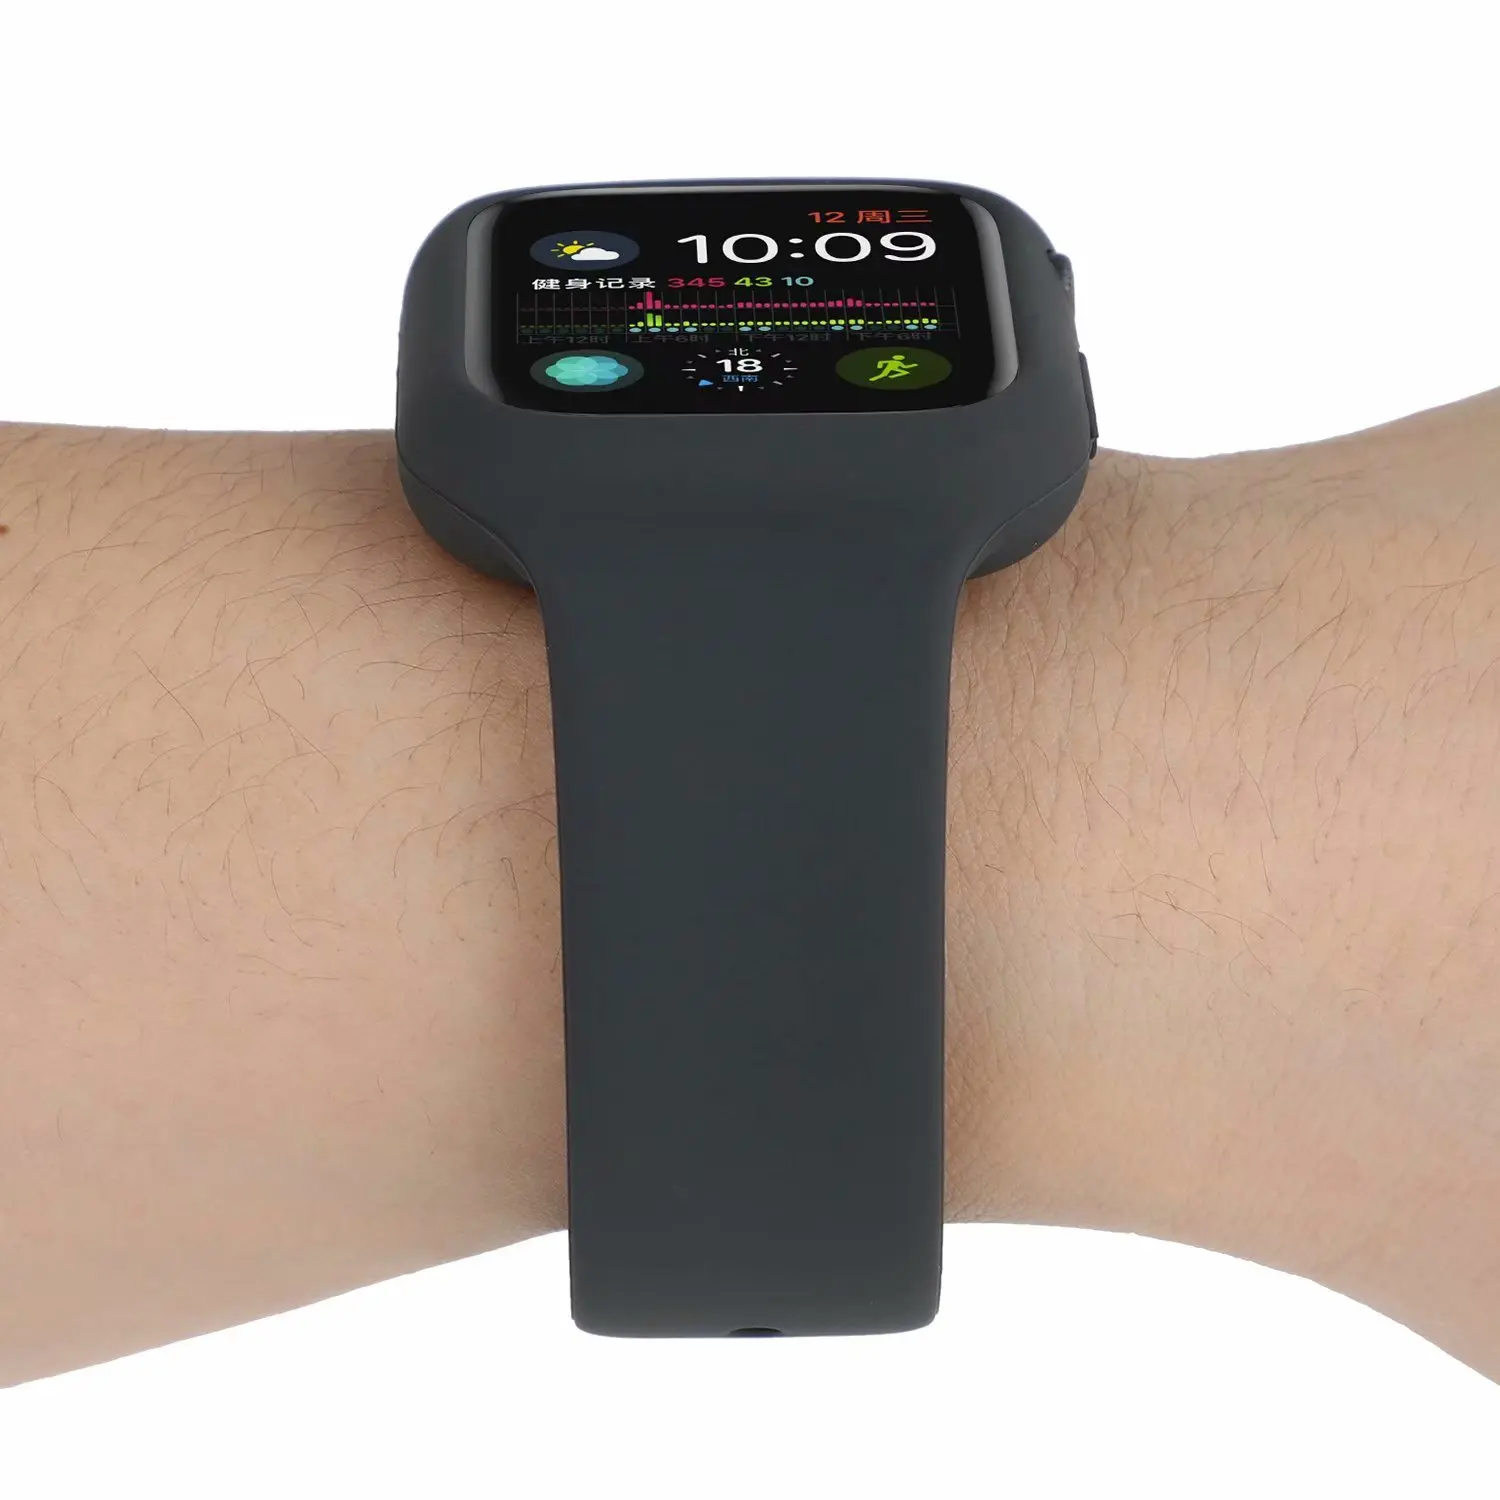 Силиконовый защитный apple watch 44 мм и браслет apple watch 40 мм спортивный ремешок Бампер протектор для iwatch 42 мм серии 3 2 1 38 мм